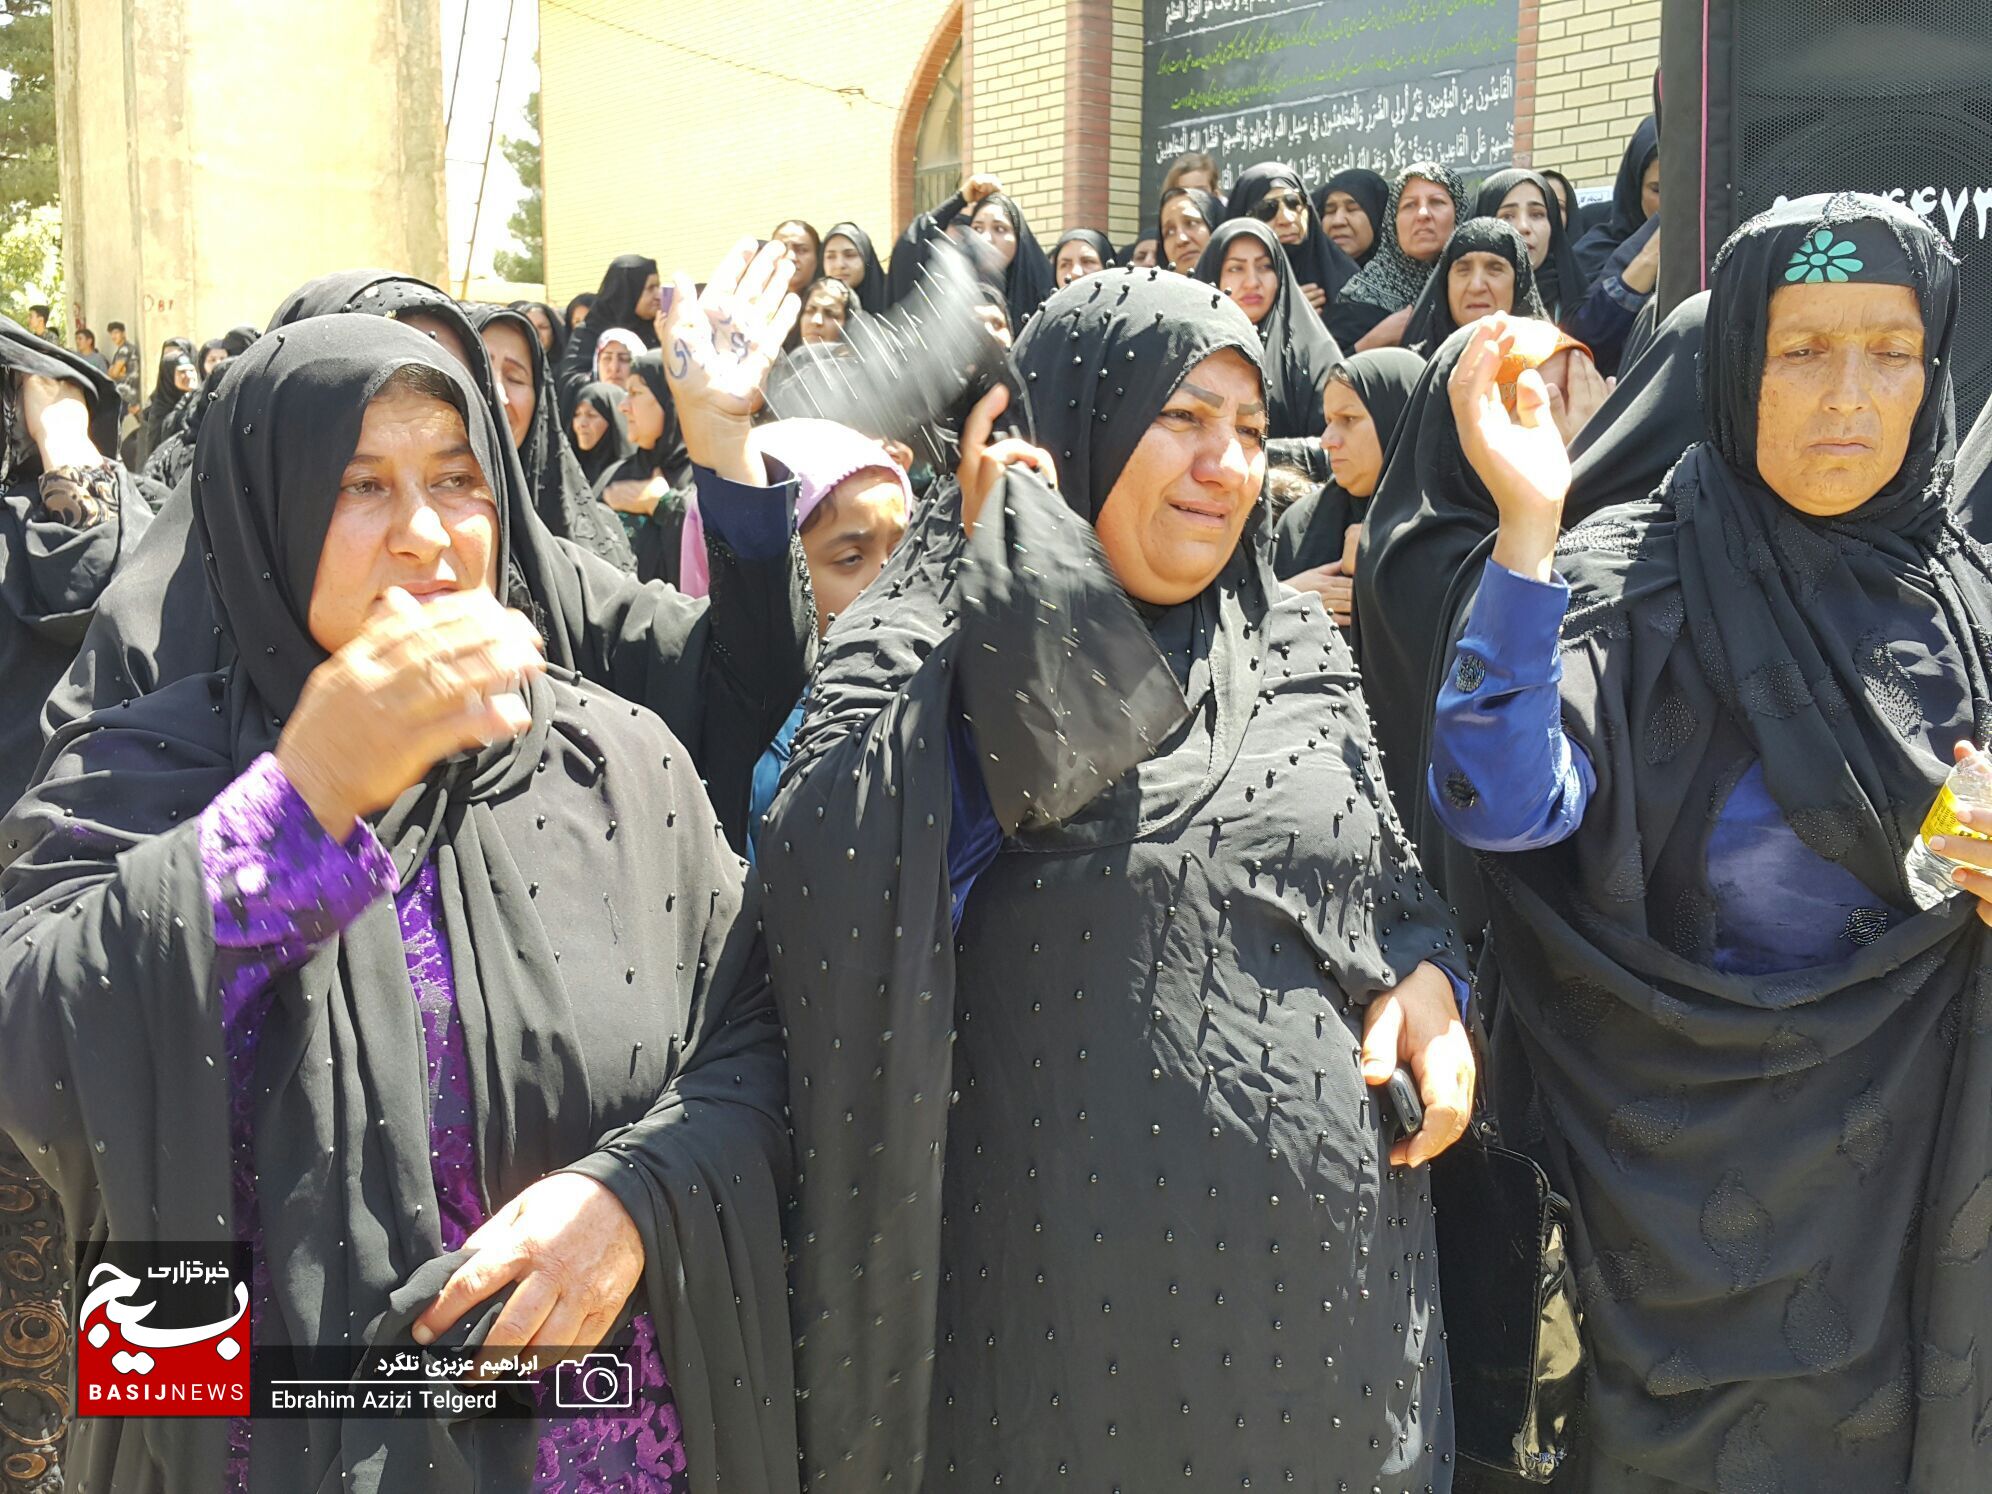 مراسم تشییع و خاکسپاری باشکوه شهید مدافع امنیت در یاسوج از دریچه دوربین خبرنگار بسیج + ( تصاویر )